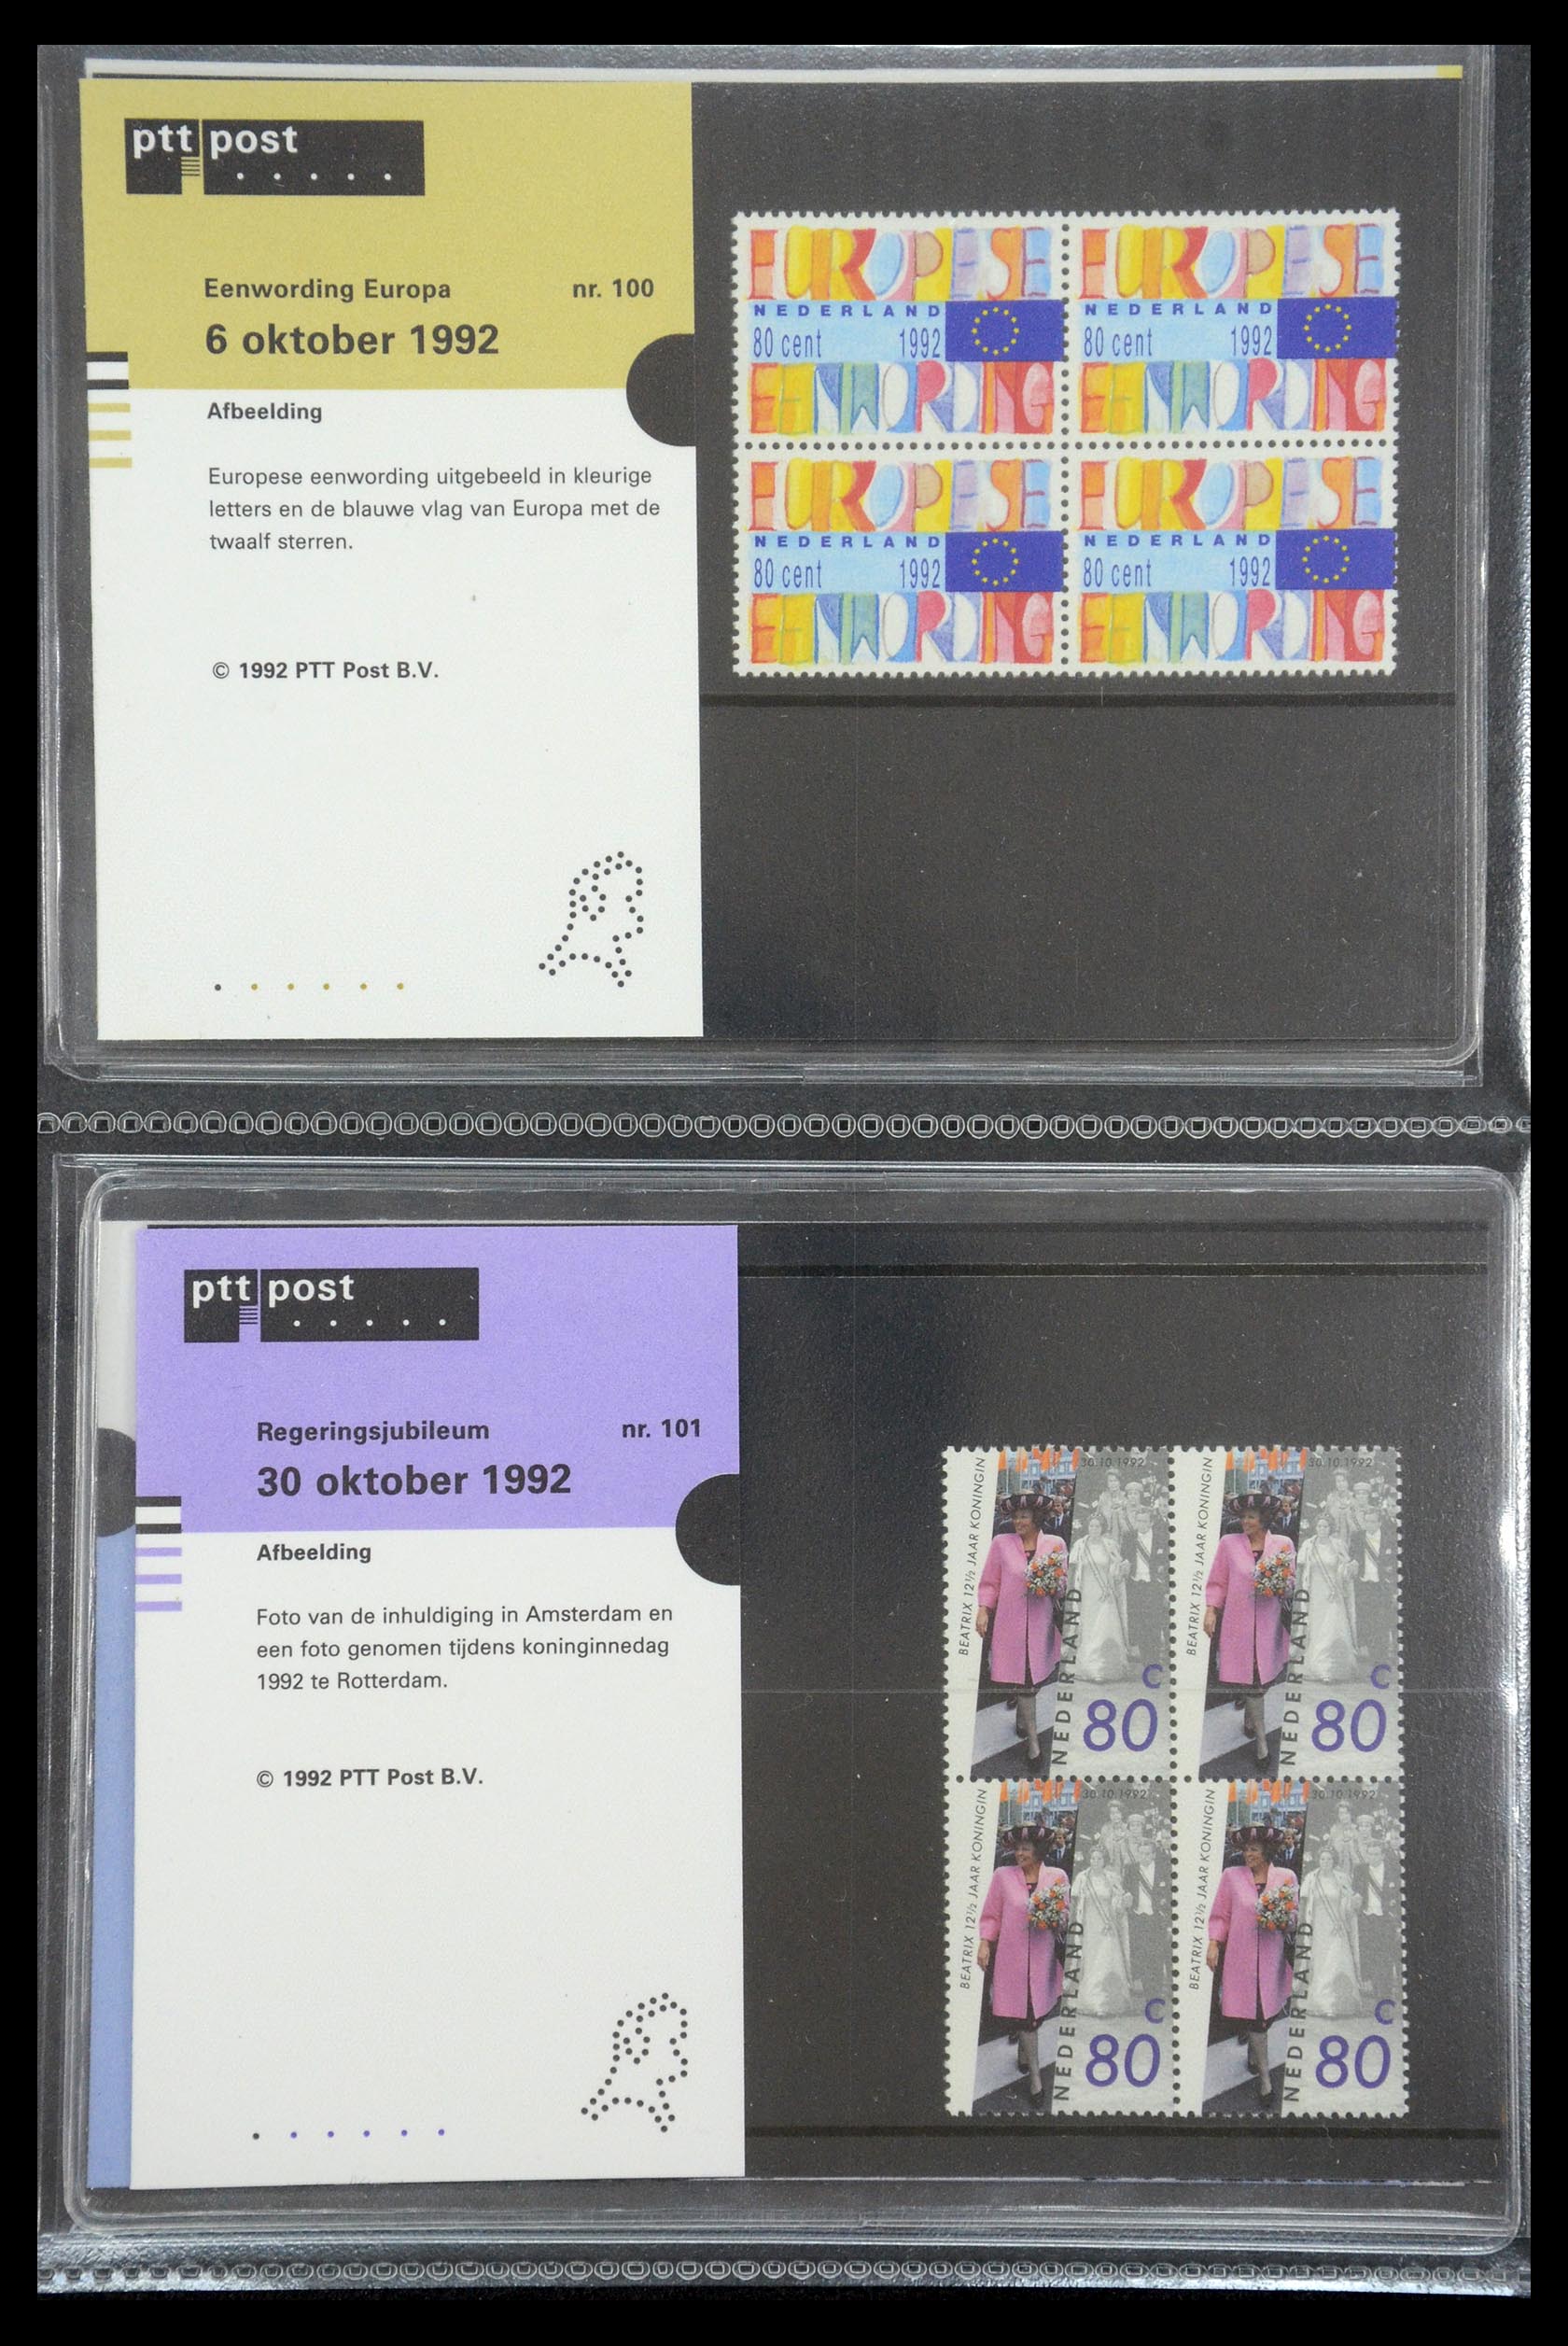 35187 051 - Stamp Collection 35187 Netherlands PTT presentation packs 1982-2019!